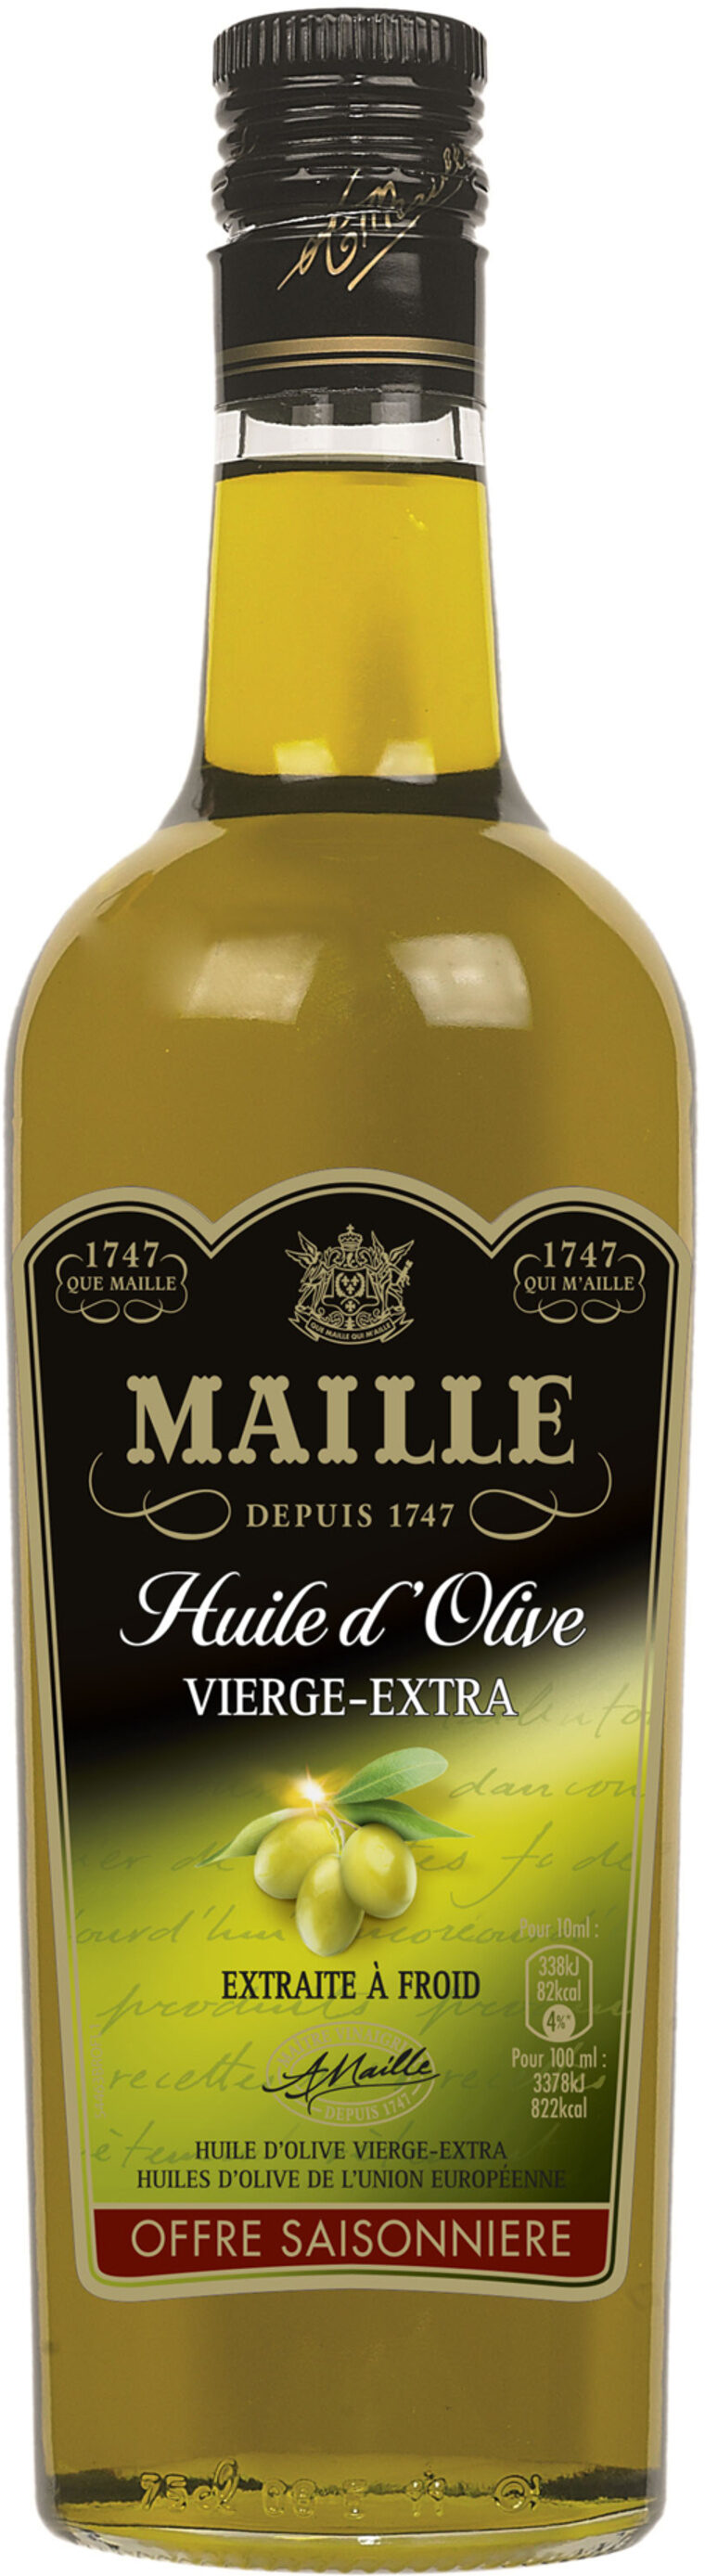 Maille Huile d'Olive Vierge Extra La Classique 75cl Offre Saisonnière - Producto - fr